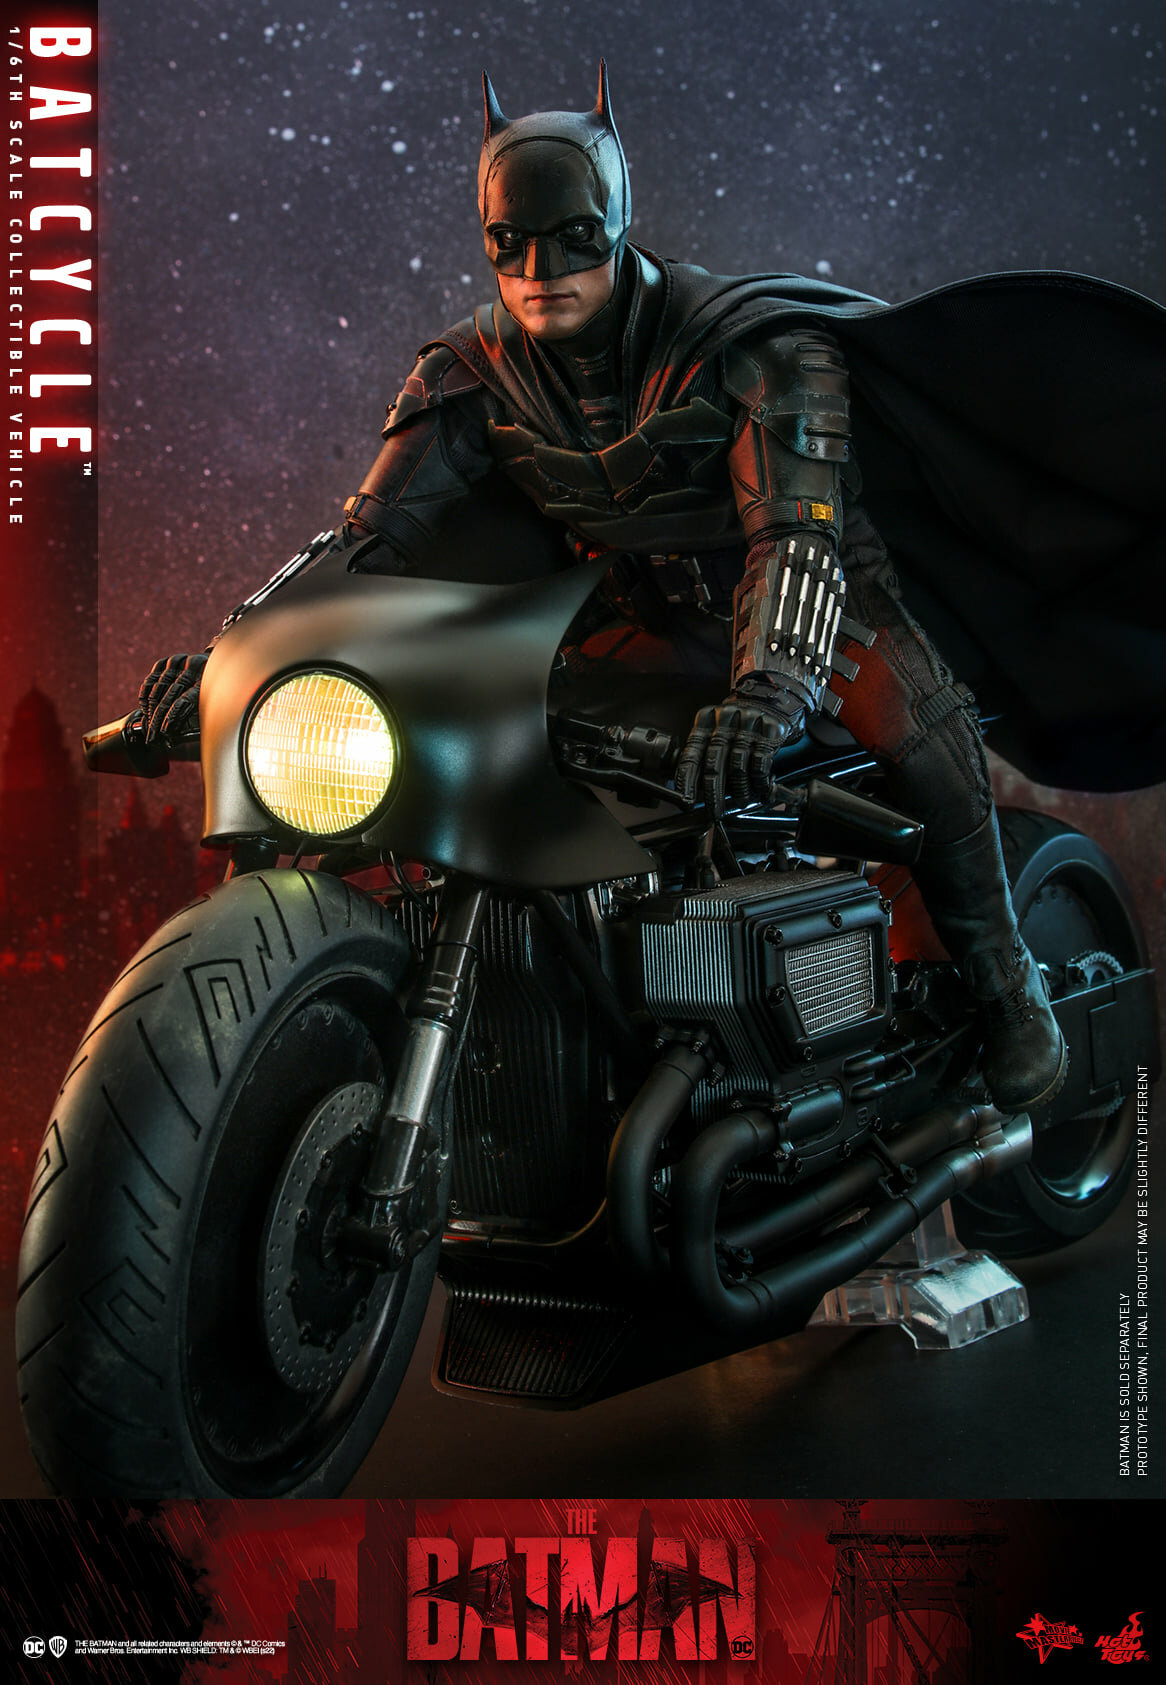 The-Batman-Batcycle-Hot-Toys-012.jpg.7315d97b1a2a4567a57679efd567788b.jpg